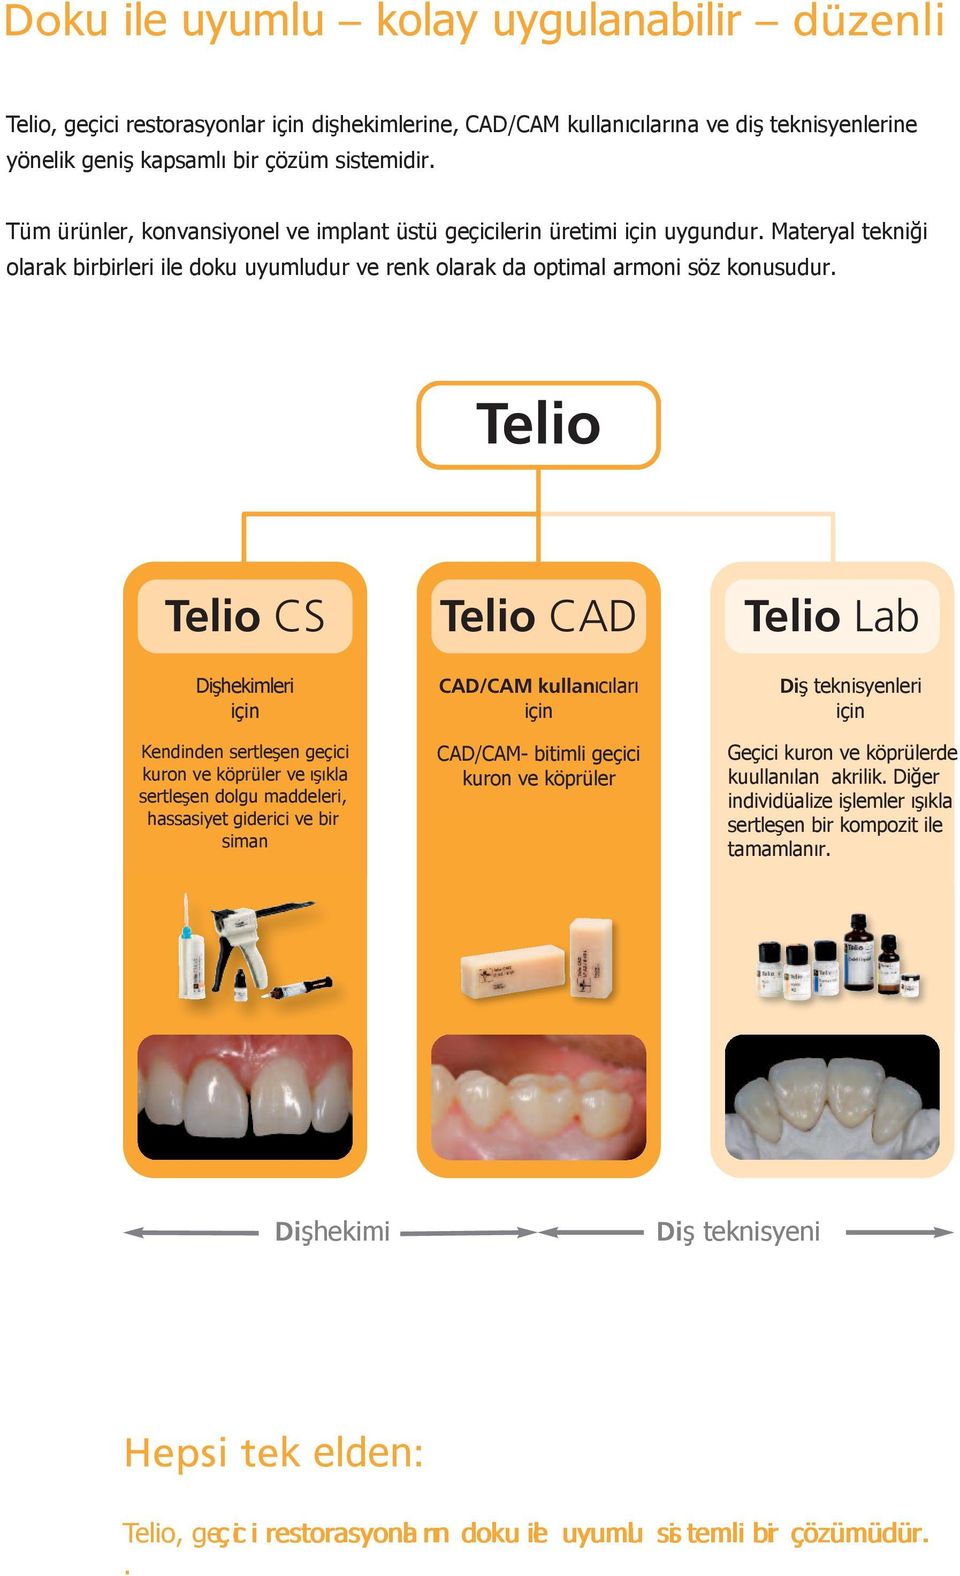 Telio Telio CS Dişhekimleri için Kendinden sertleşen geçici kuron ve köprüler ve ışıkla sertleşen dolgu maddeleri, hassasiyet giderici ve bir siman Telio CAD CAD/CAM kullanıcıları için CAD/CAM-